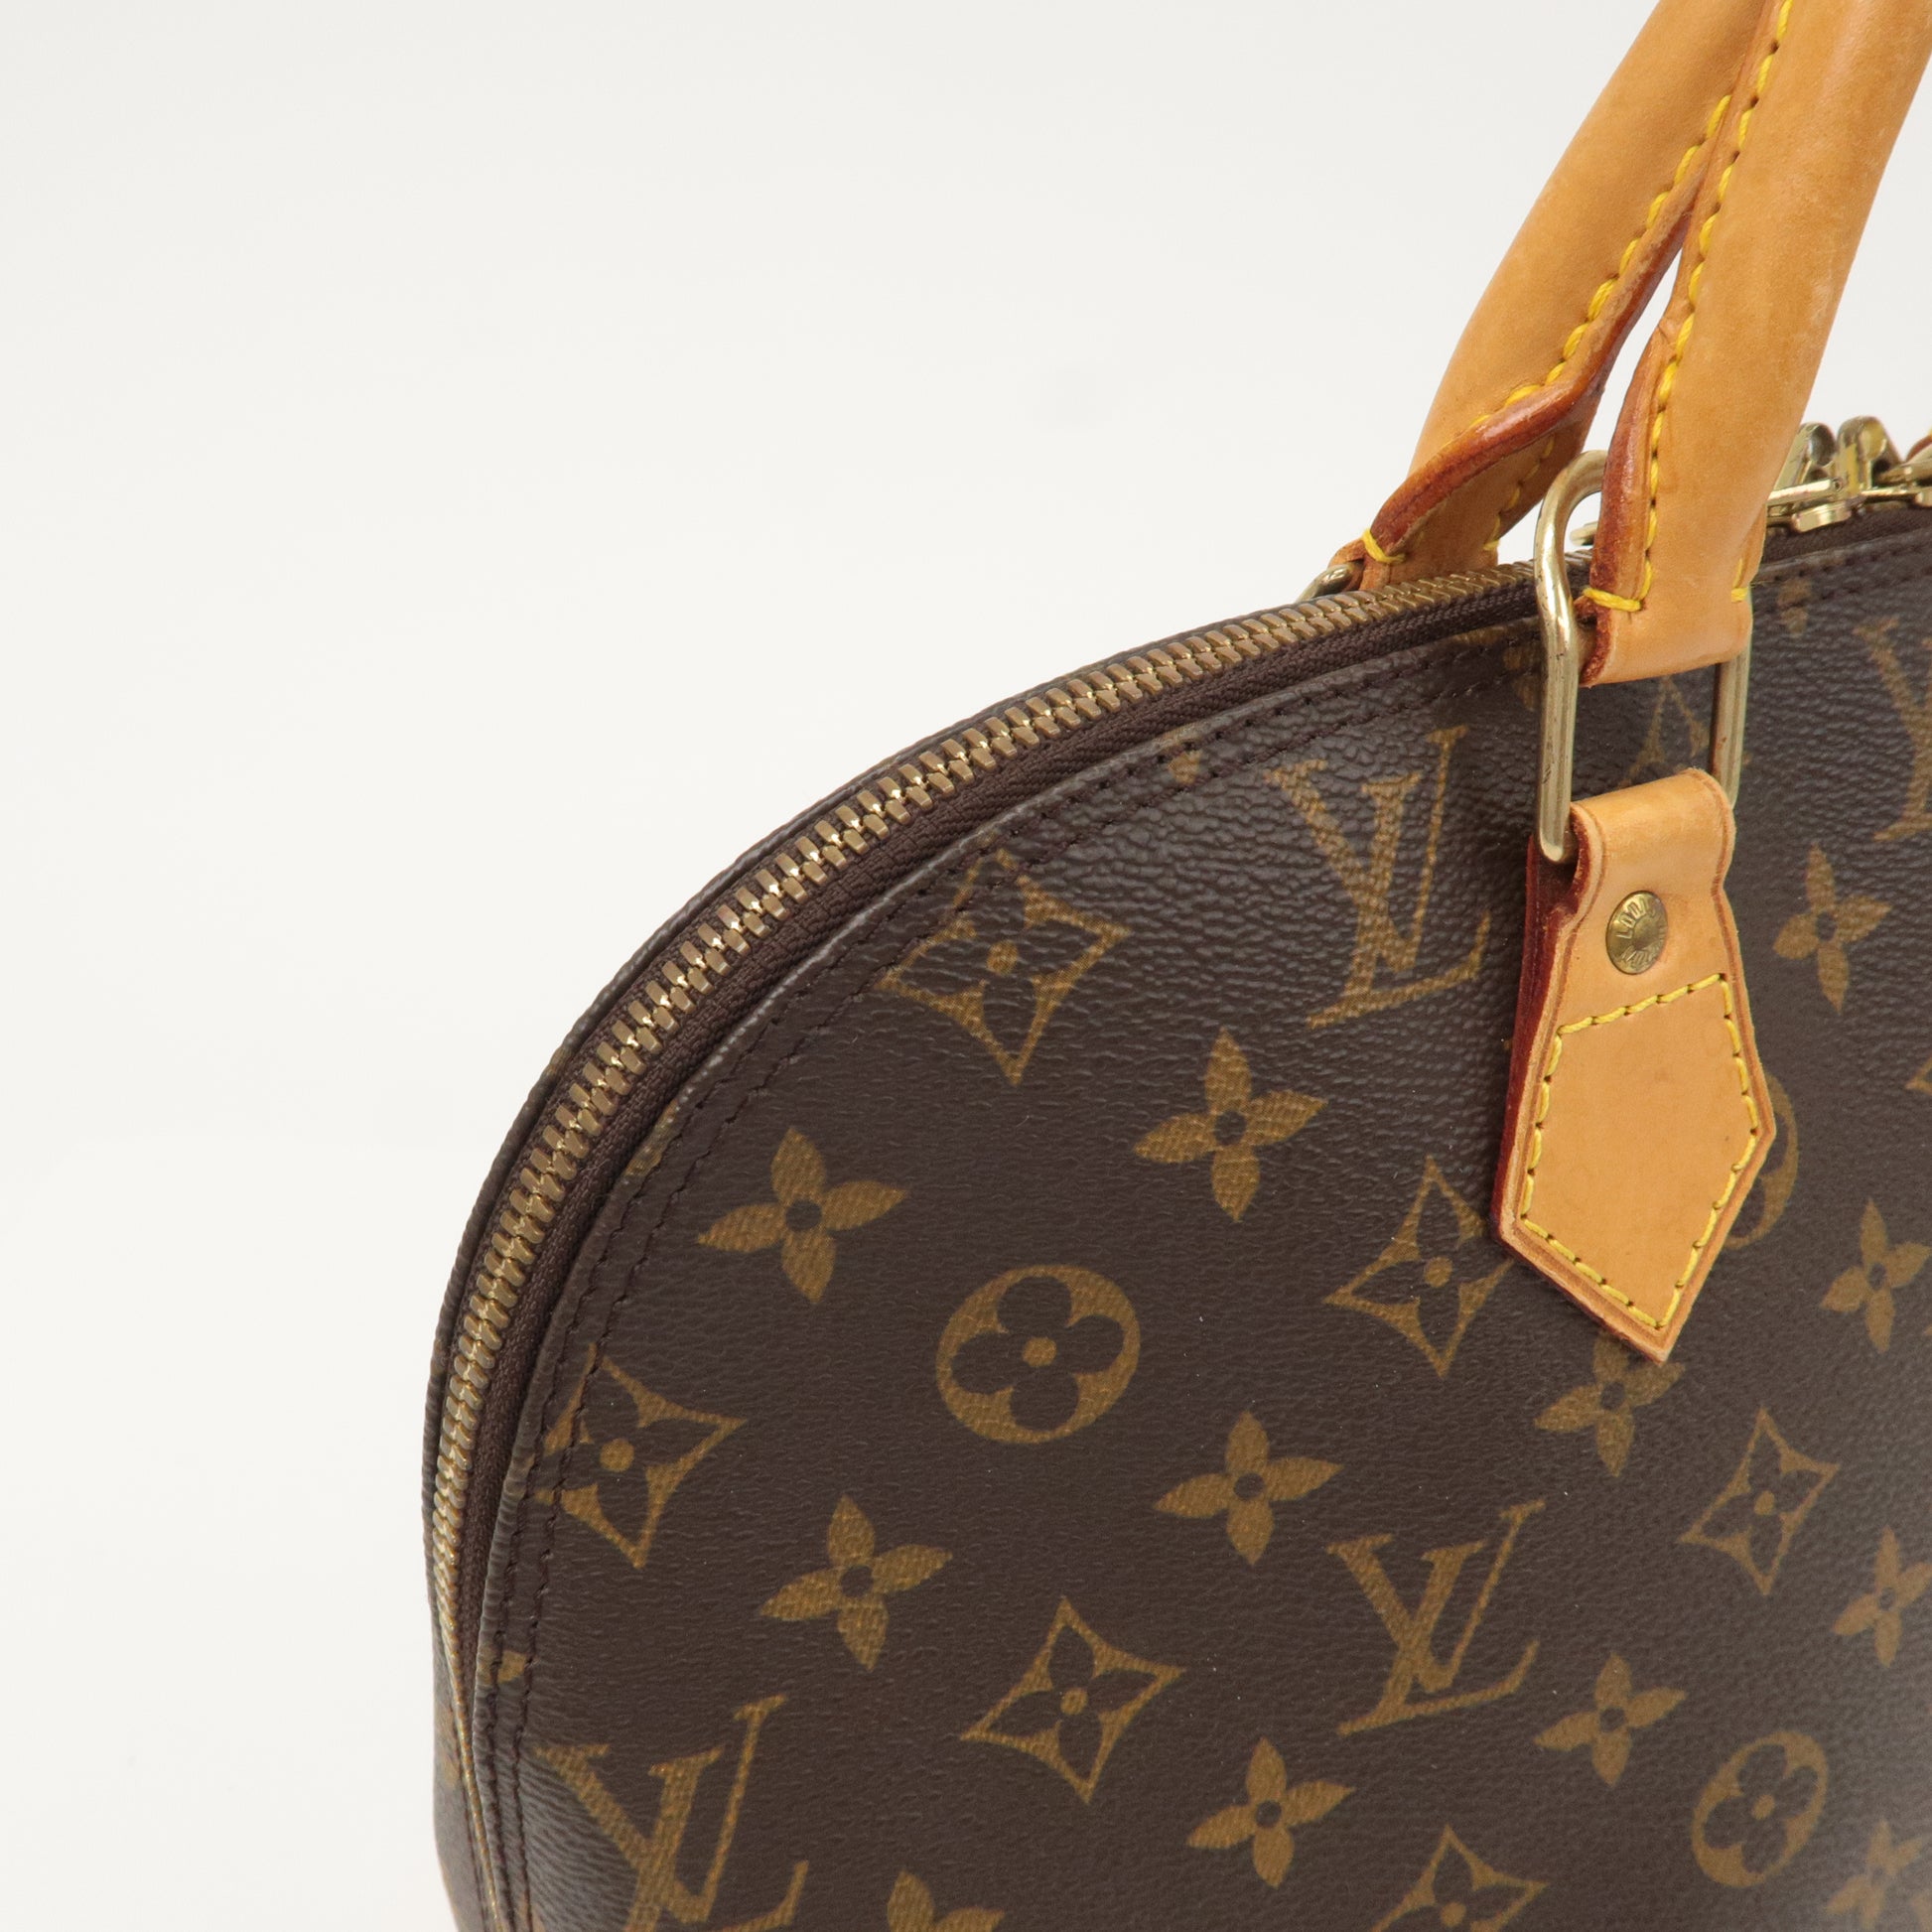 Authentic Louis Vuitton Monogram Alma Hand Bag Purse M51130 LV